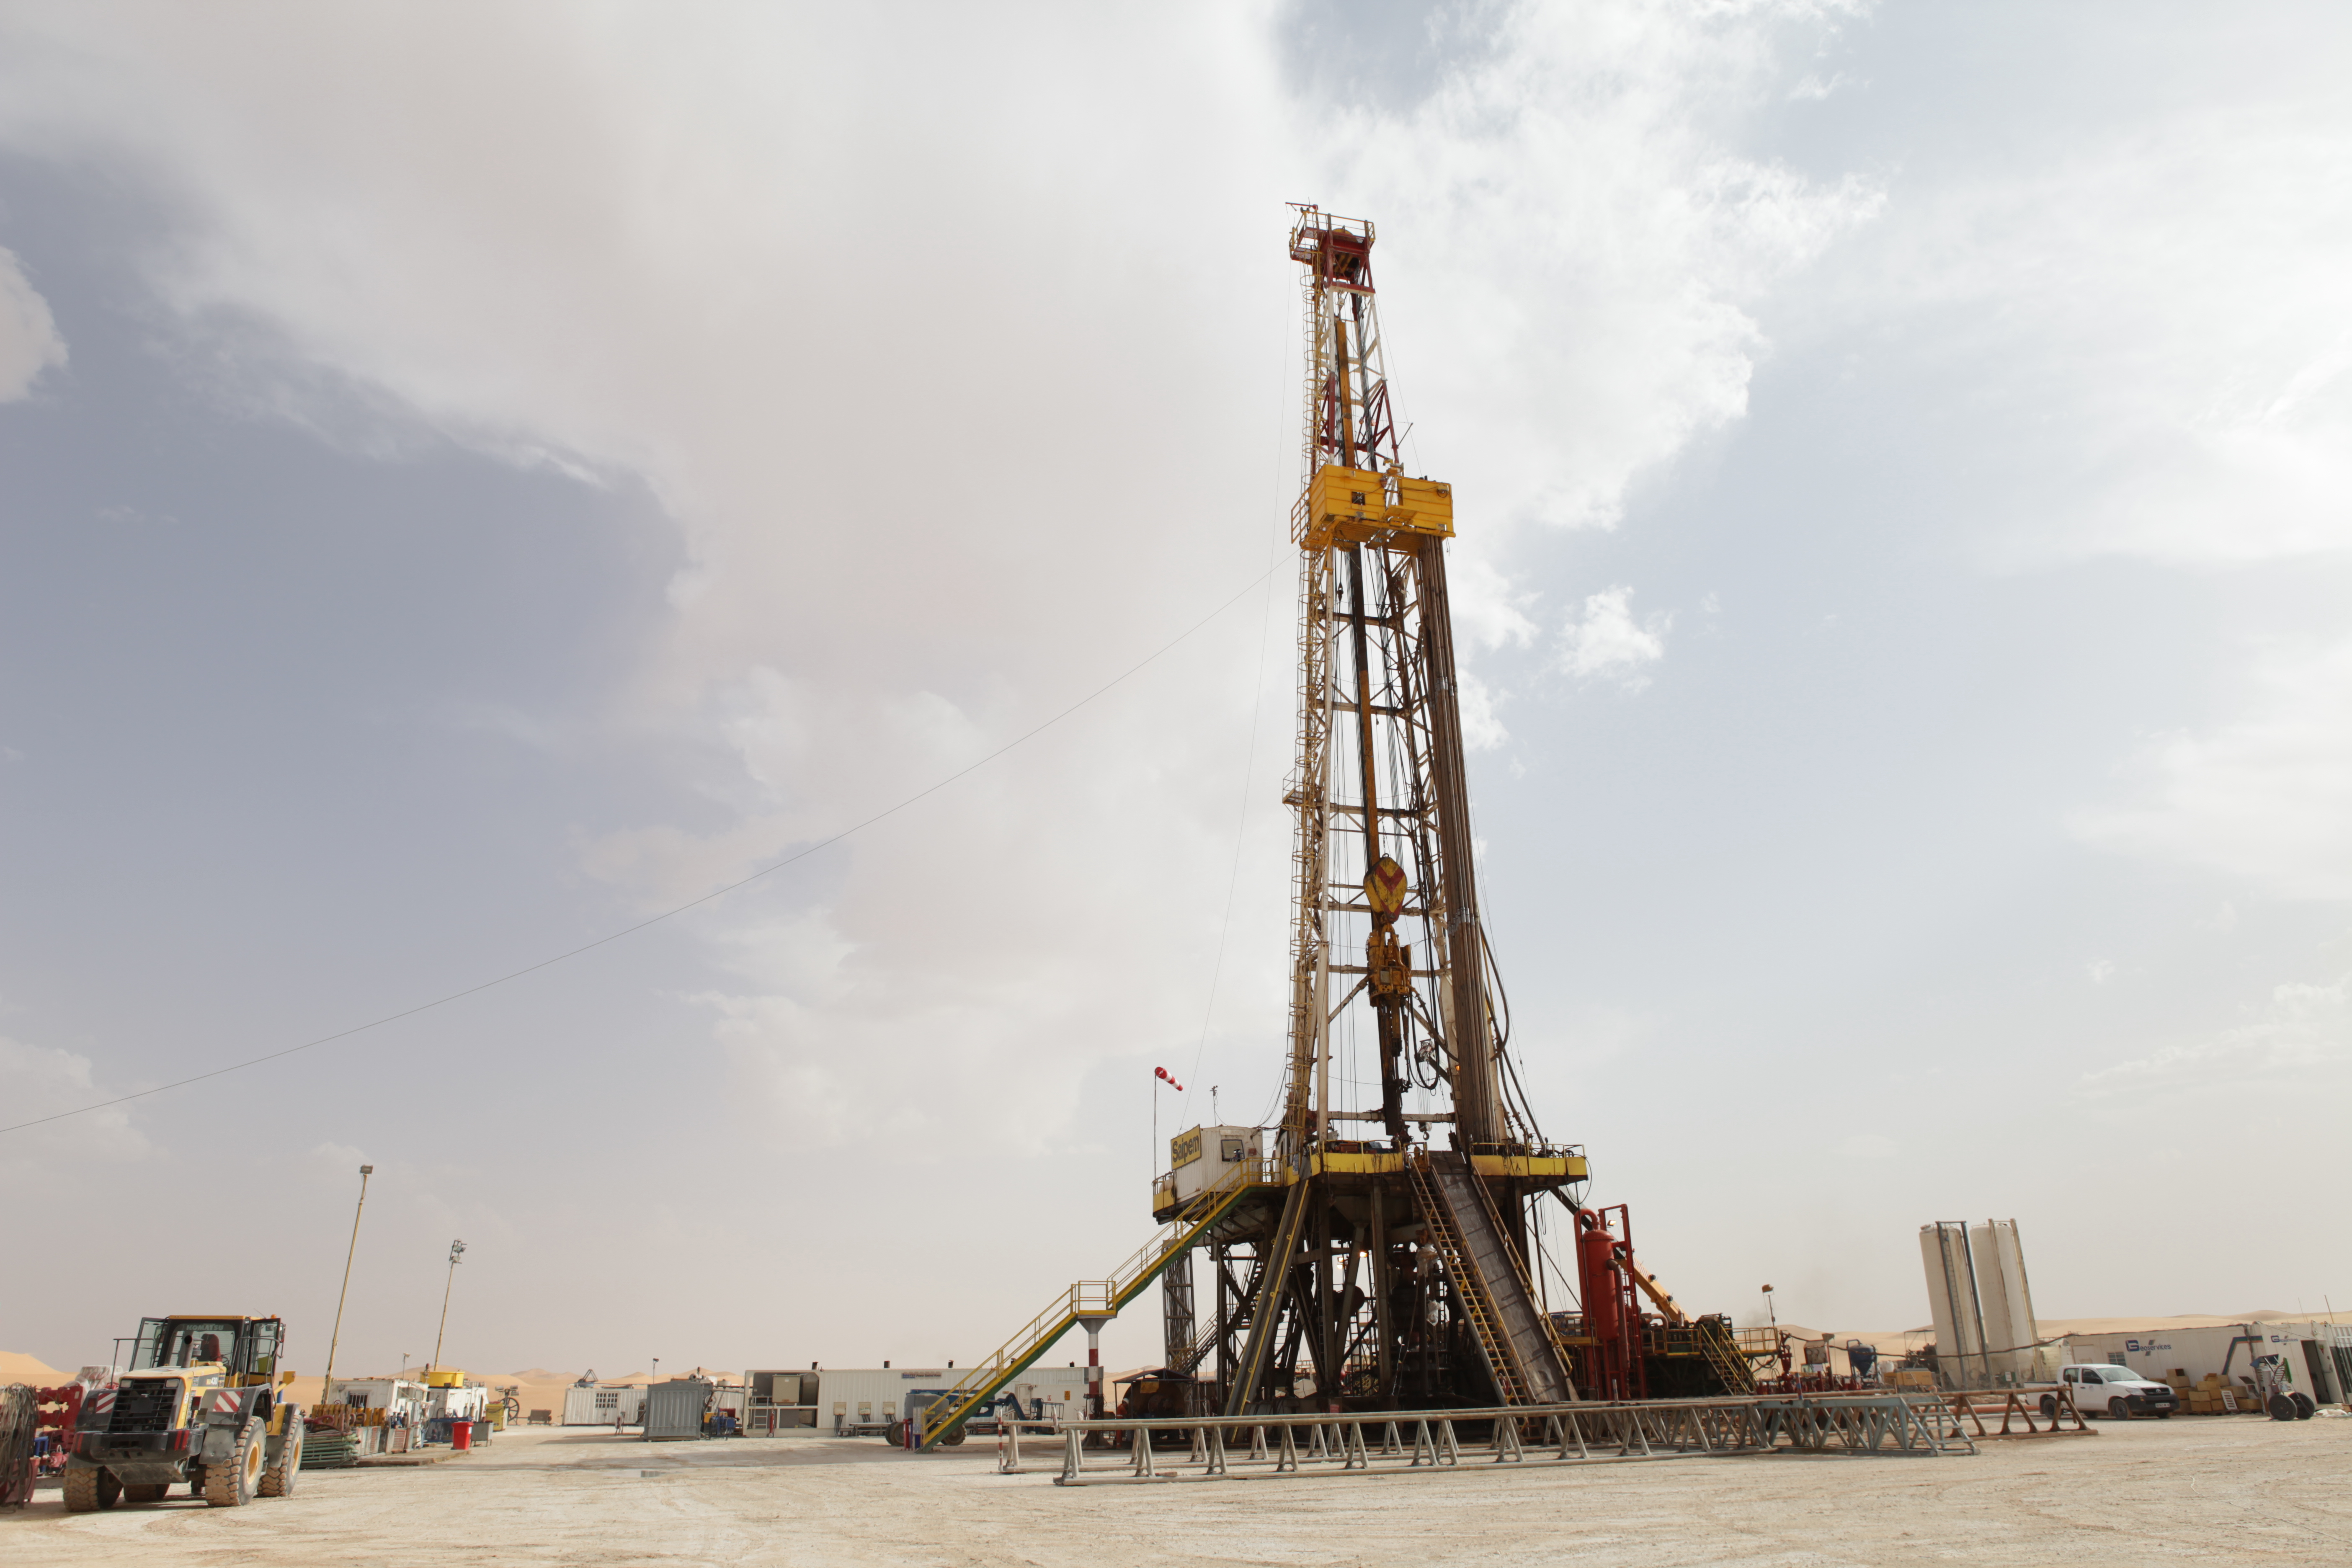 
Gazprom International пробурит разведочную скважину на участке Эль-Ассель в Алжире